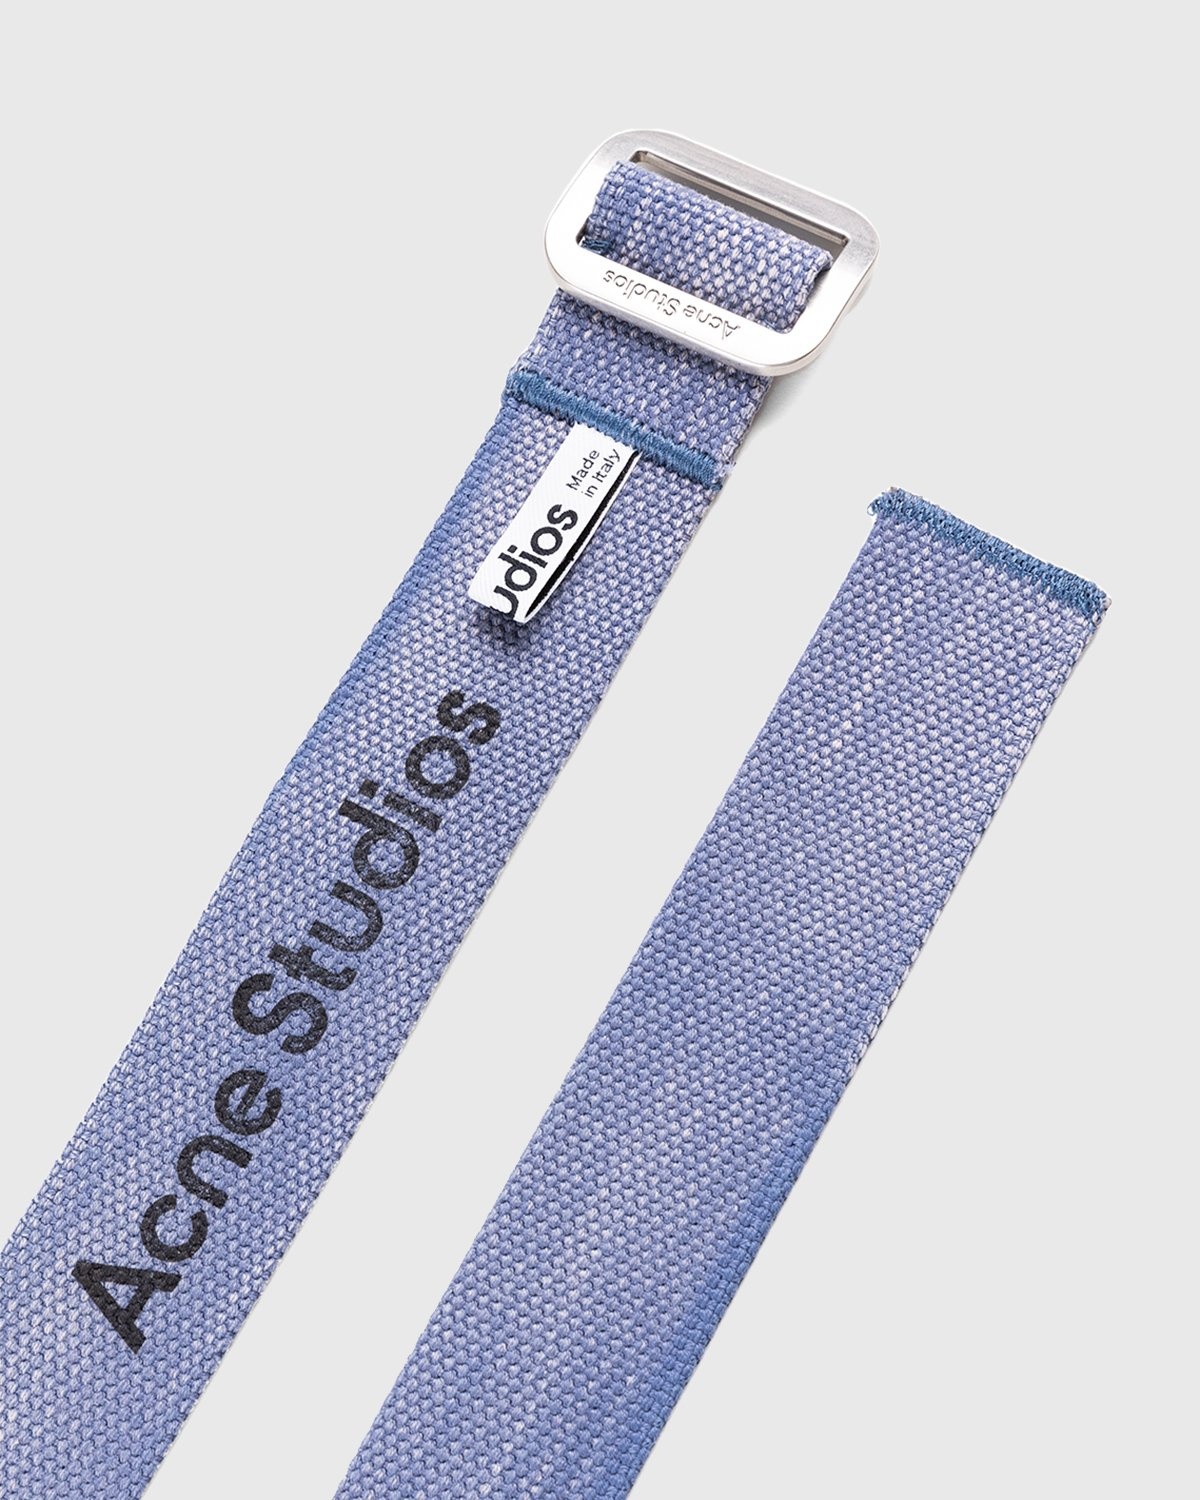 Acne Studios – Cotton Webbing Belt Dusty Blue - Belts - Blue - Image 2